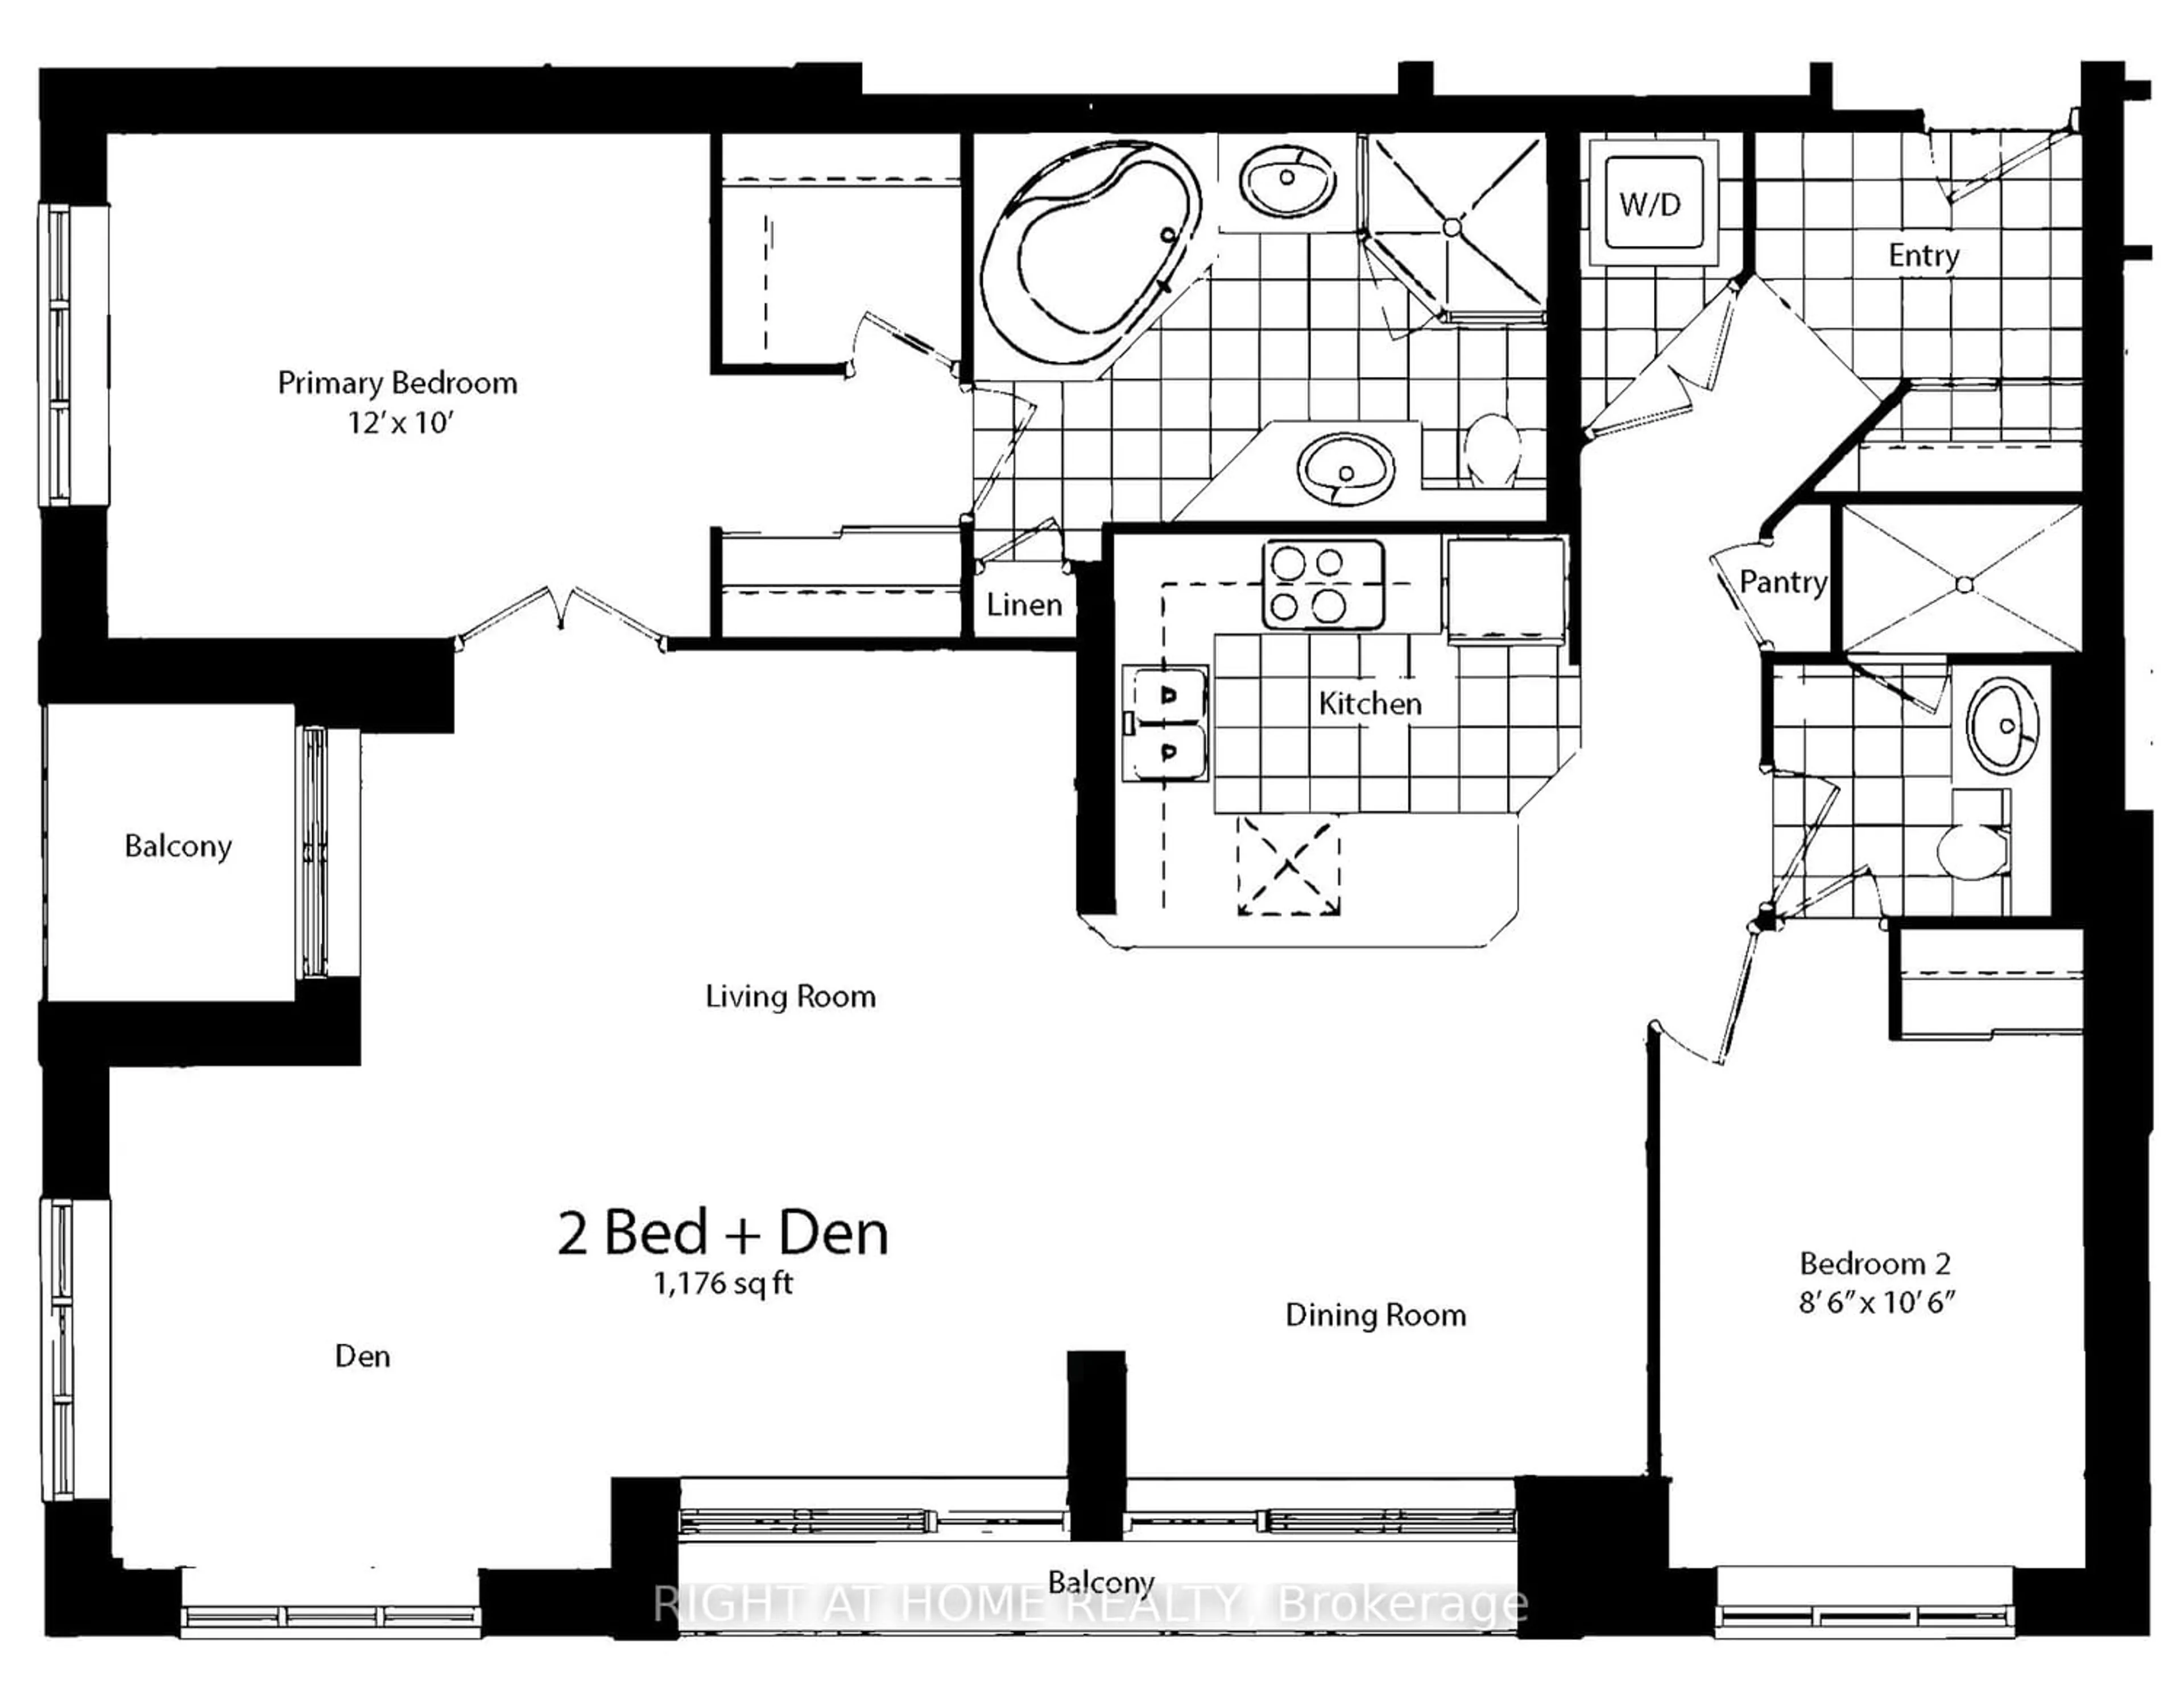 Floor plan for 140 Simcoe St #1415, Toronto Ontario M5H 4E9